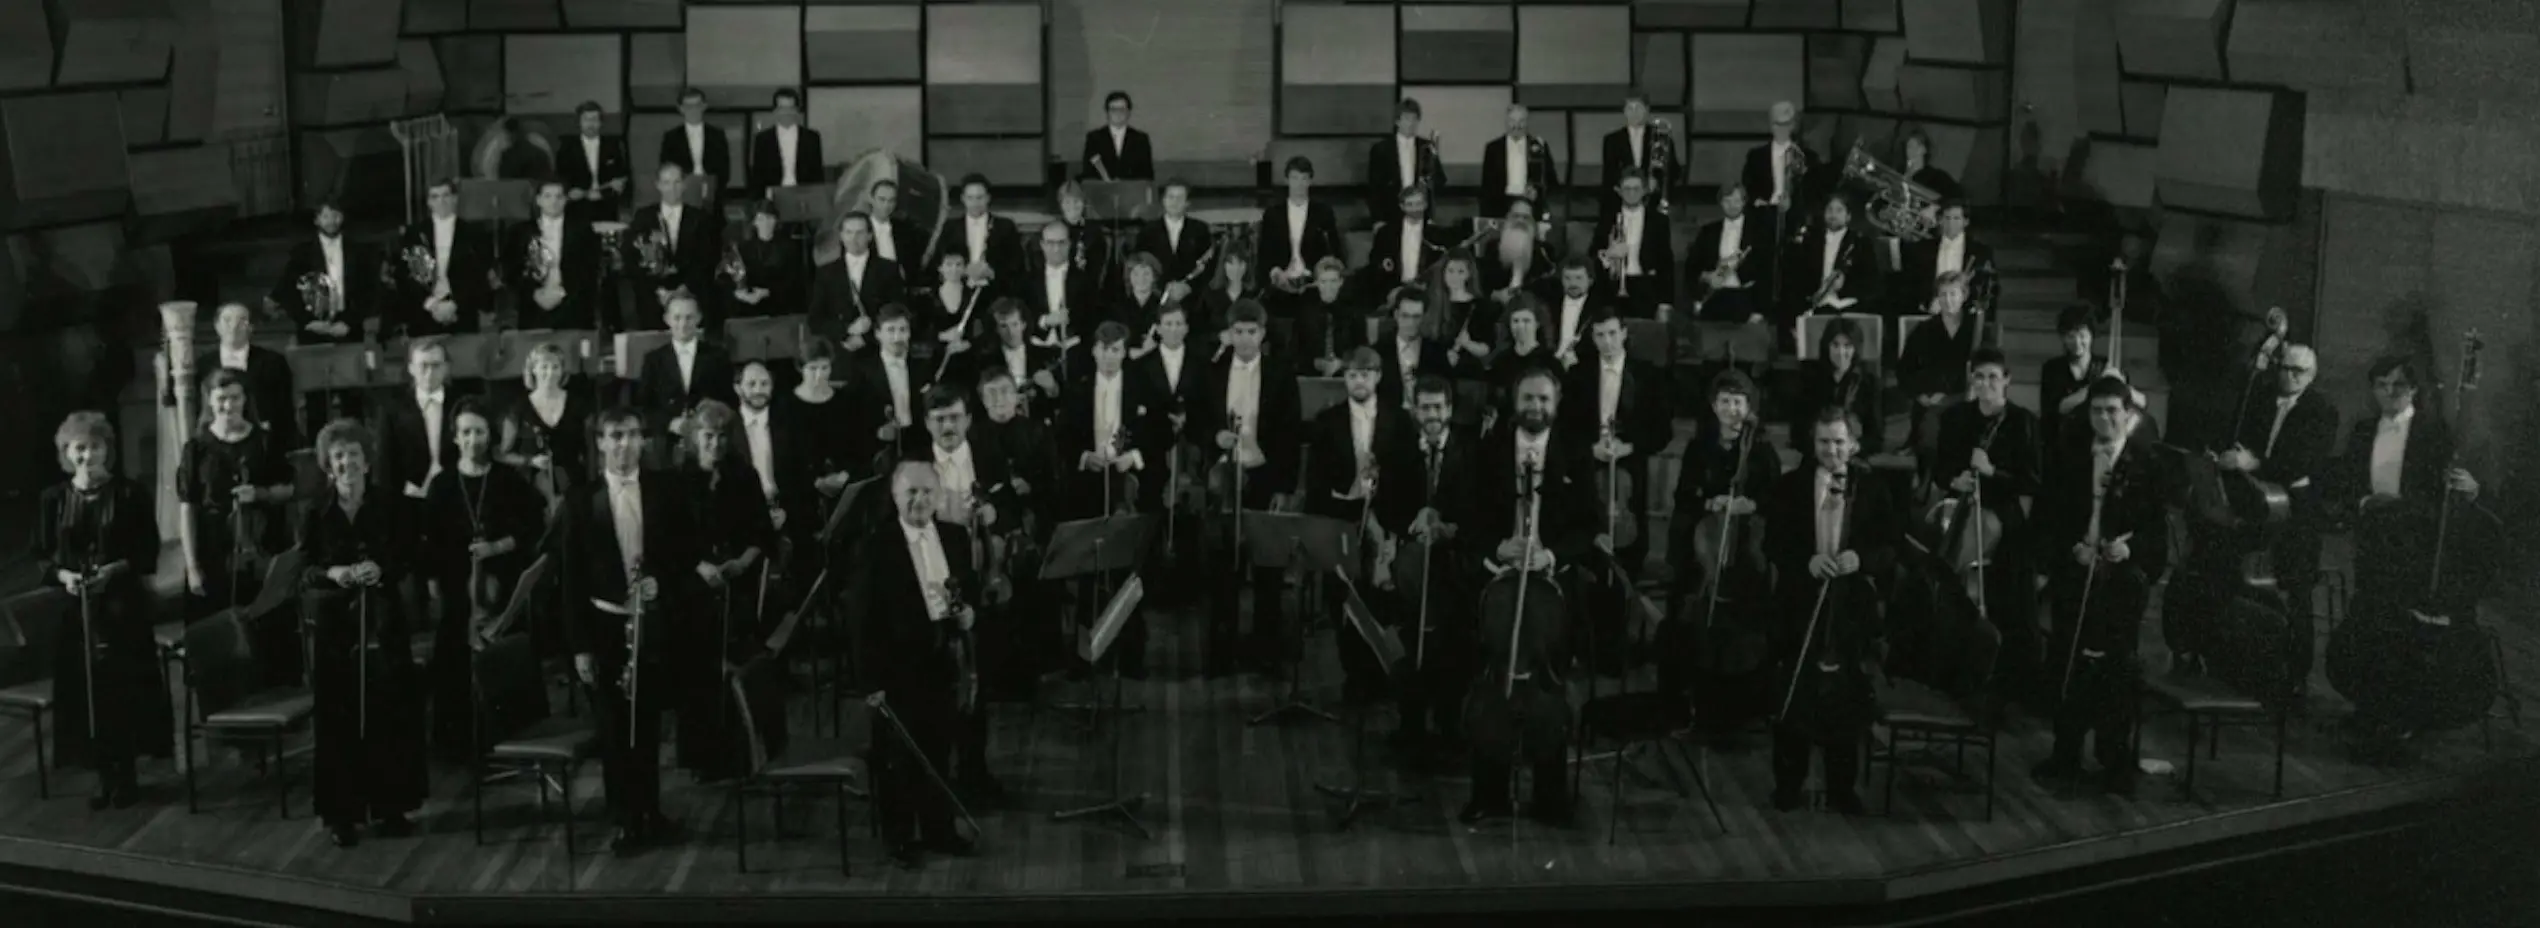 Elizabethan Philharmonic Orchestra, 1987